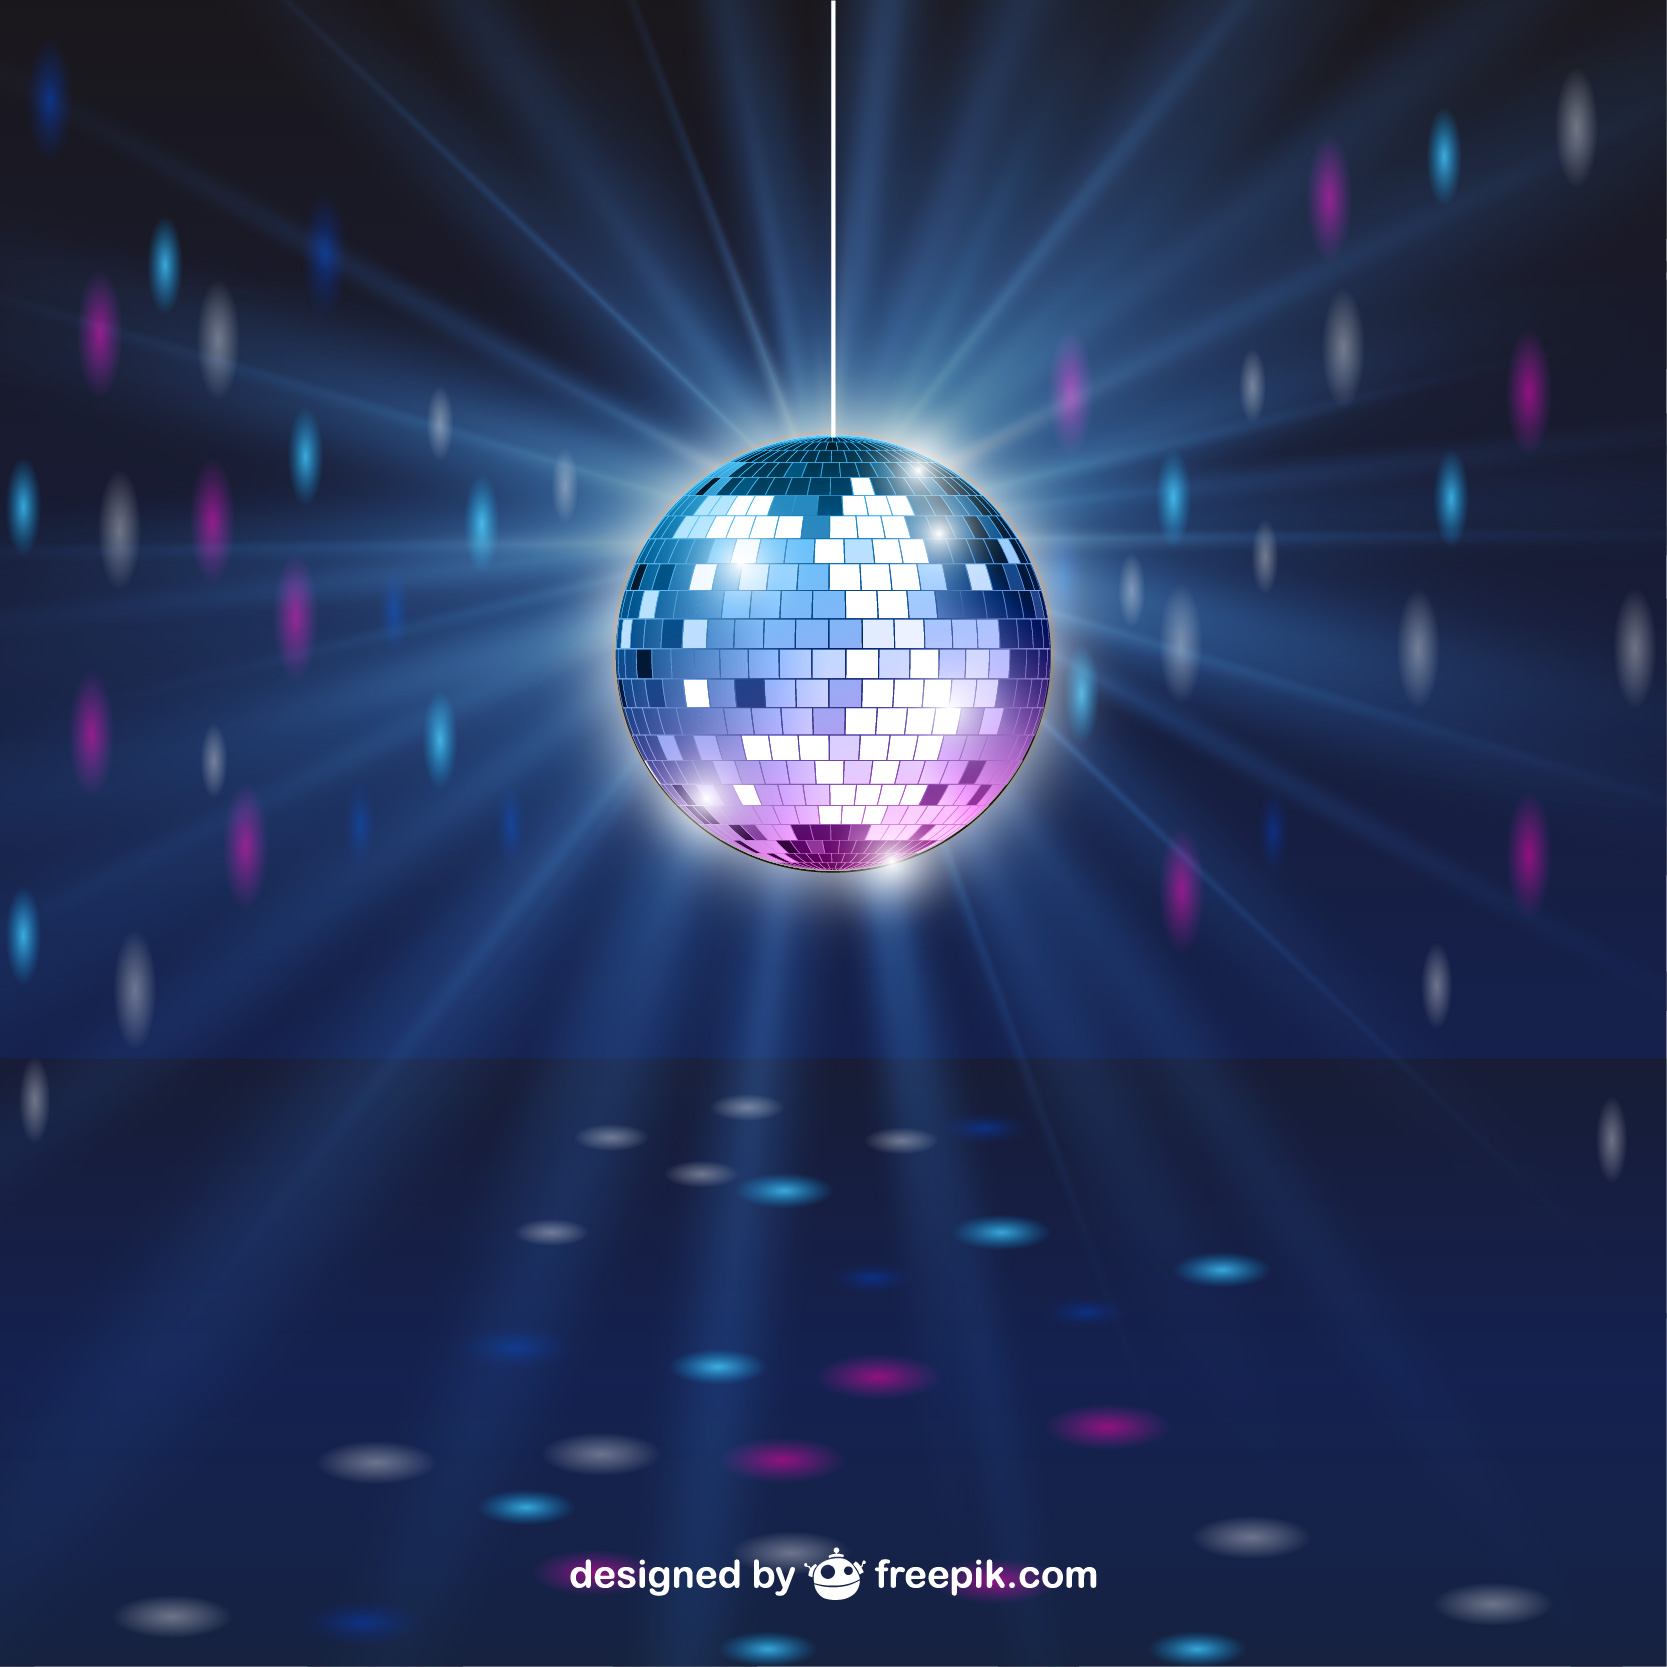 Shiny disco ball by freepik.com